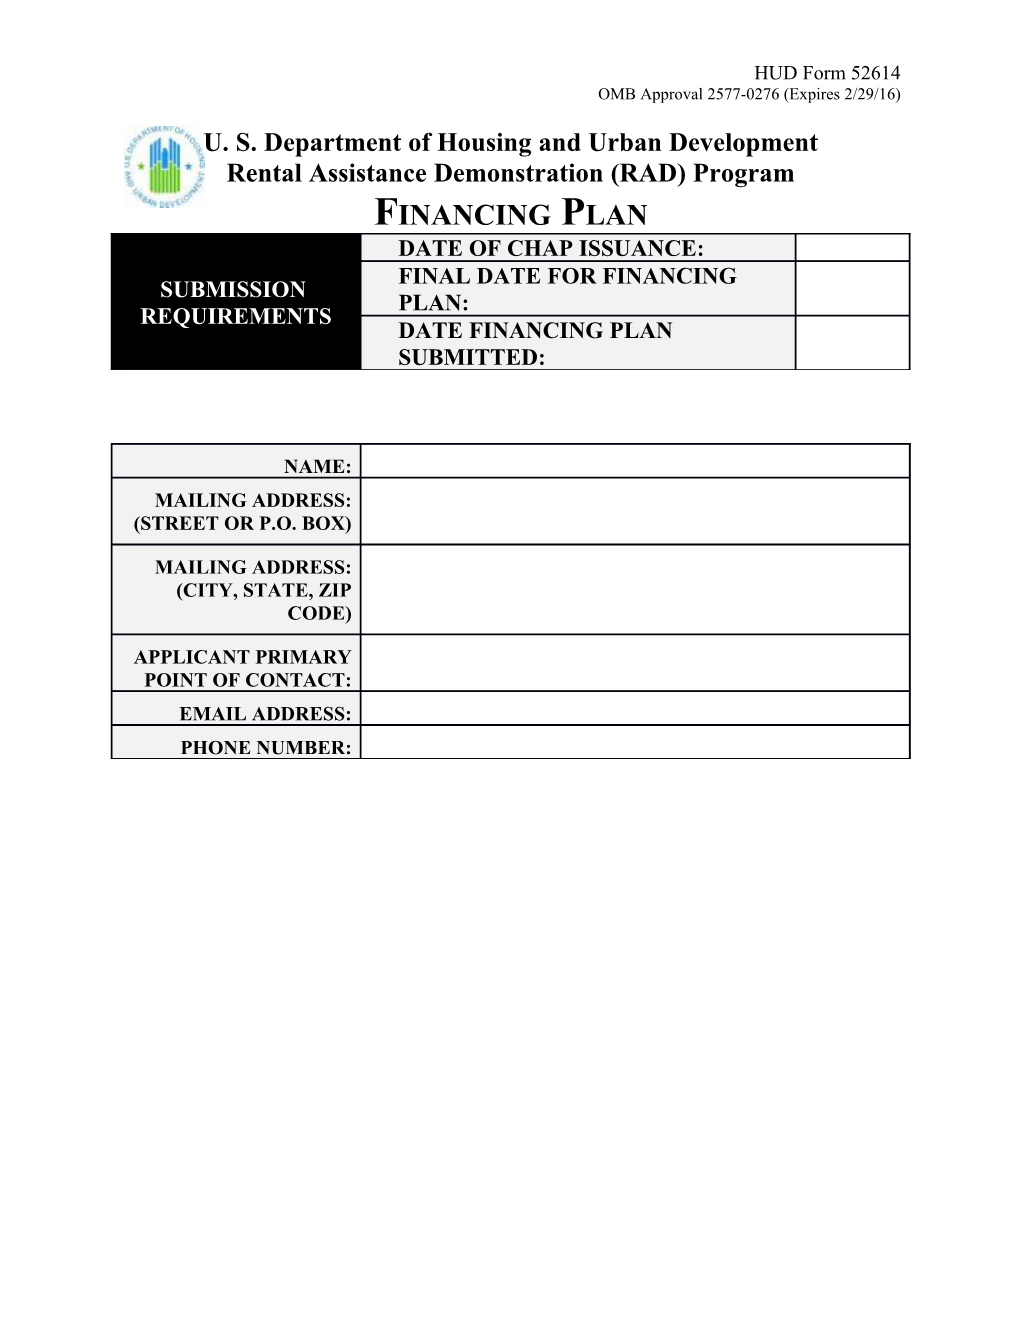 Rental Assistance Demonstration (RAD) Program Financing Plan